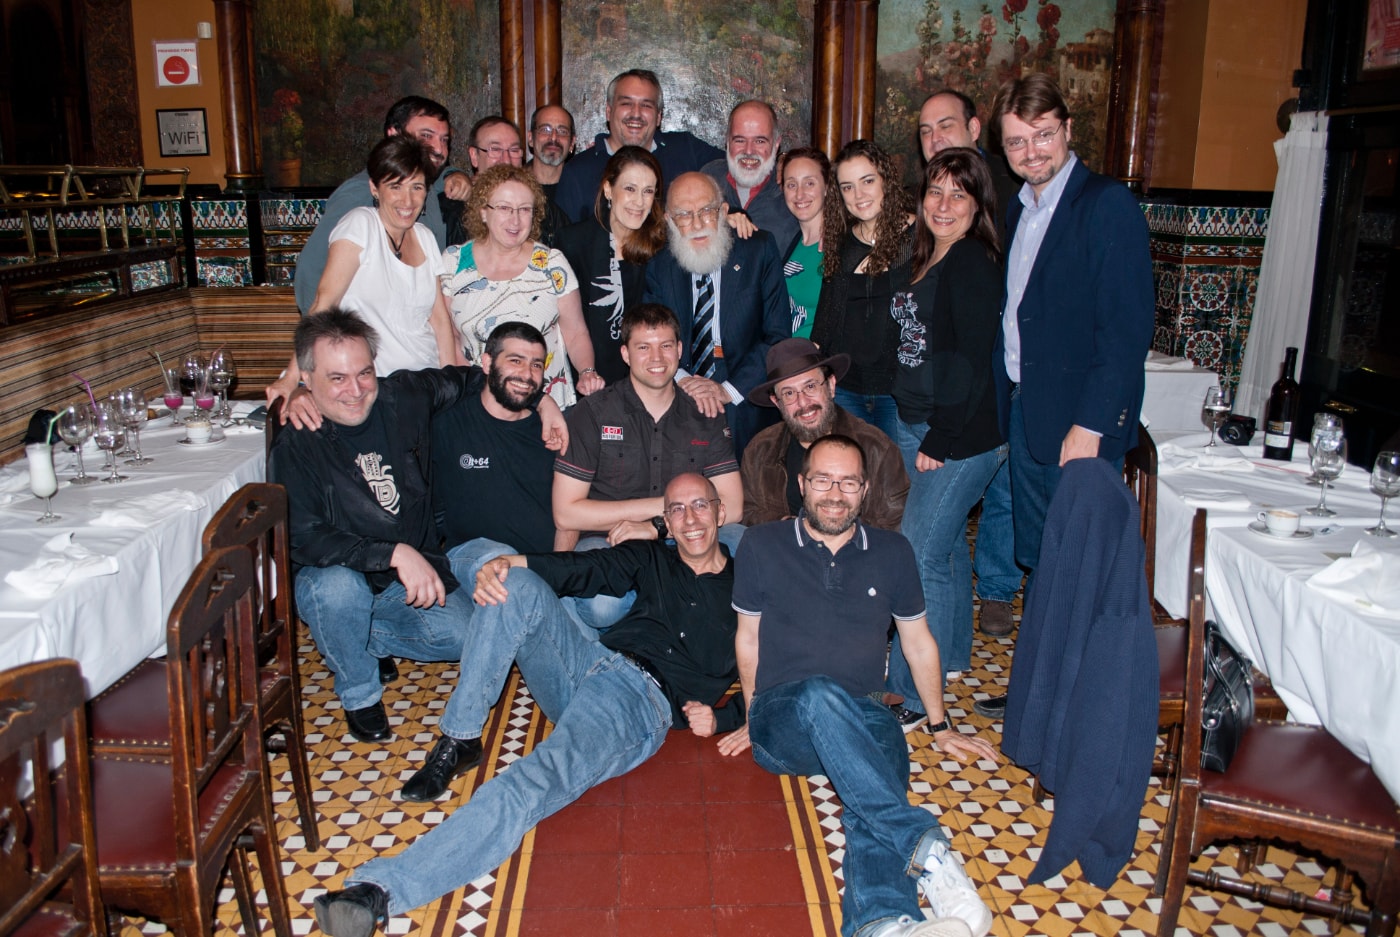 James Randi, en el centro, y D.J. Grothe, a la derecha, tras la cena en la que fueron nombrados socios de honor del Círculo Escéptico, en Bilbao. Foto: Justin Weinstein.